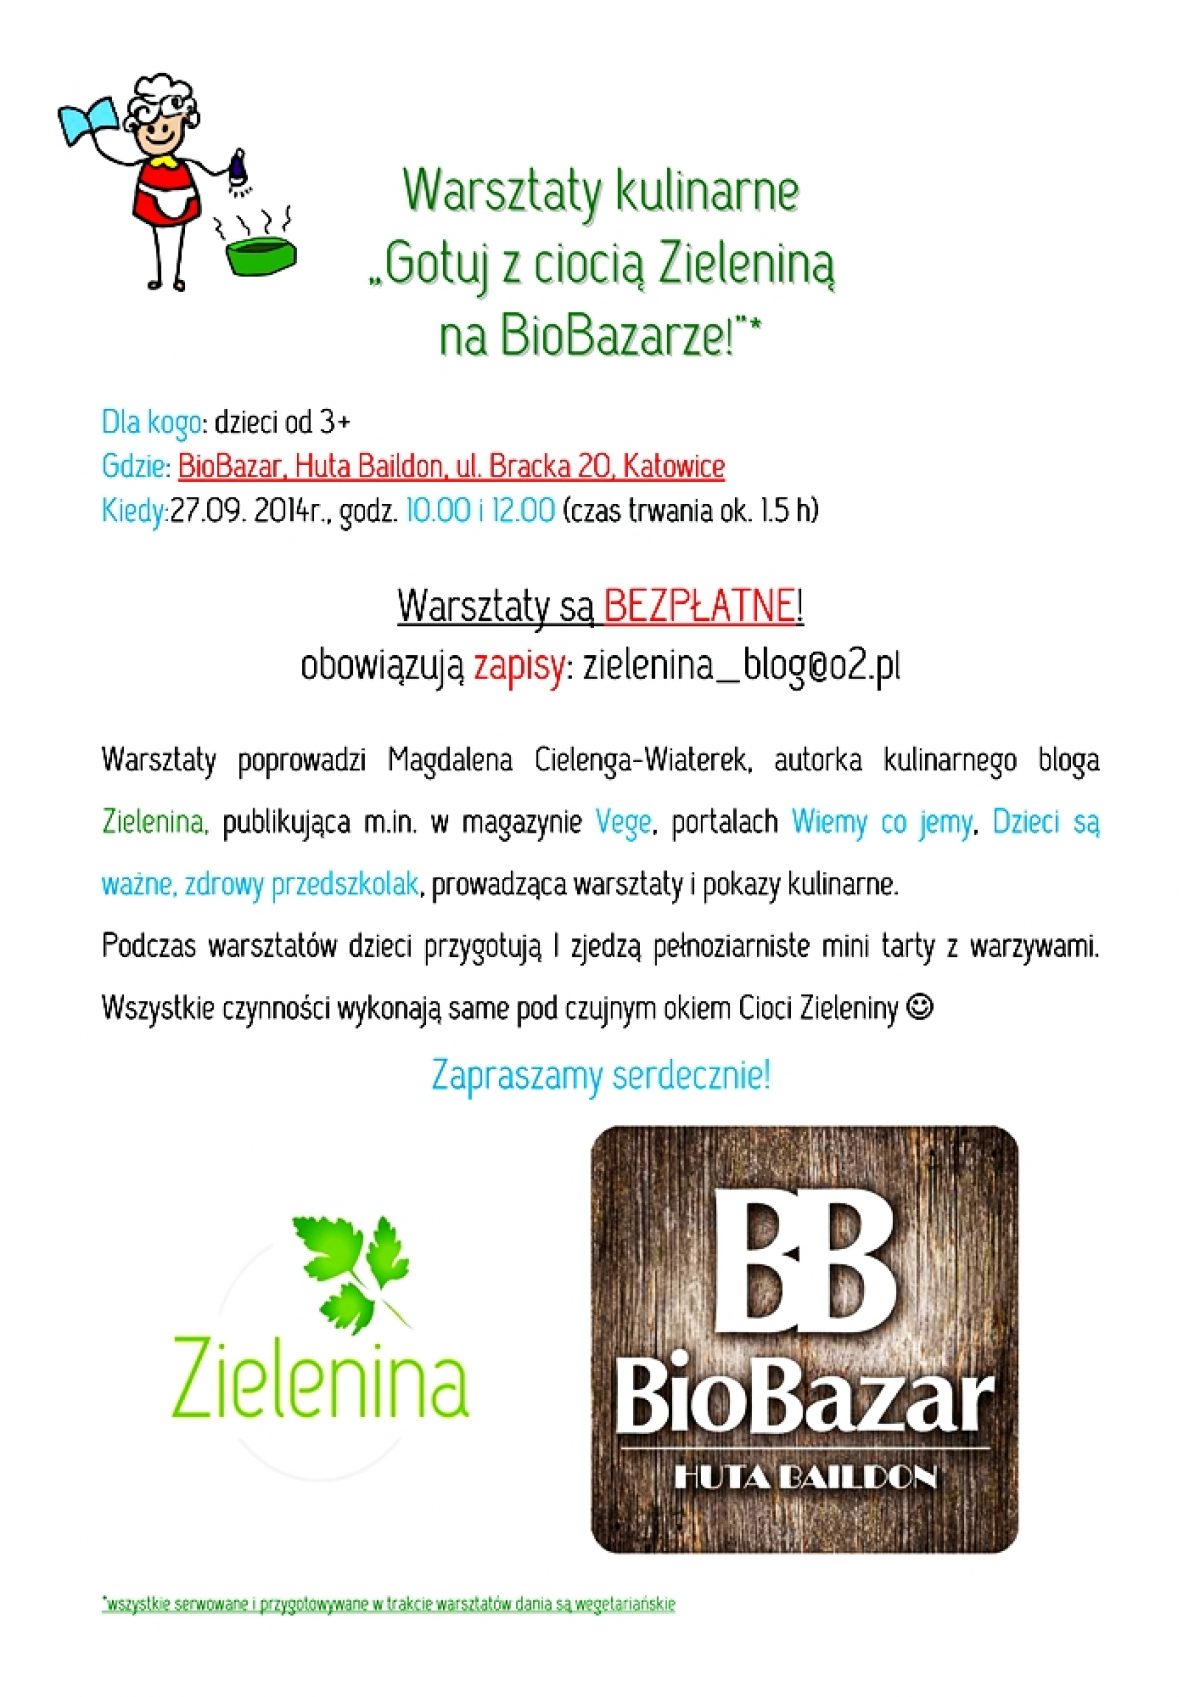 Bezpłatne warsztaty dla dzieci na katowickim BioBazarze!